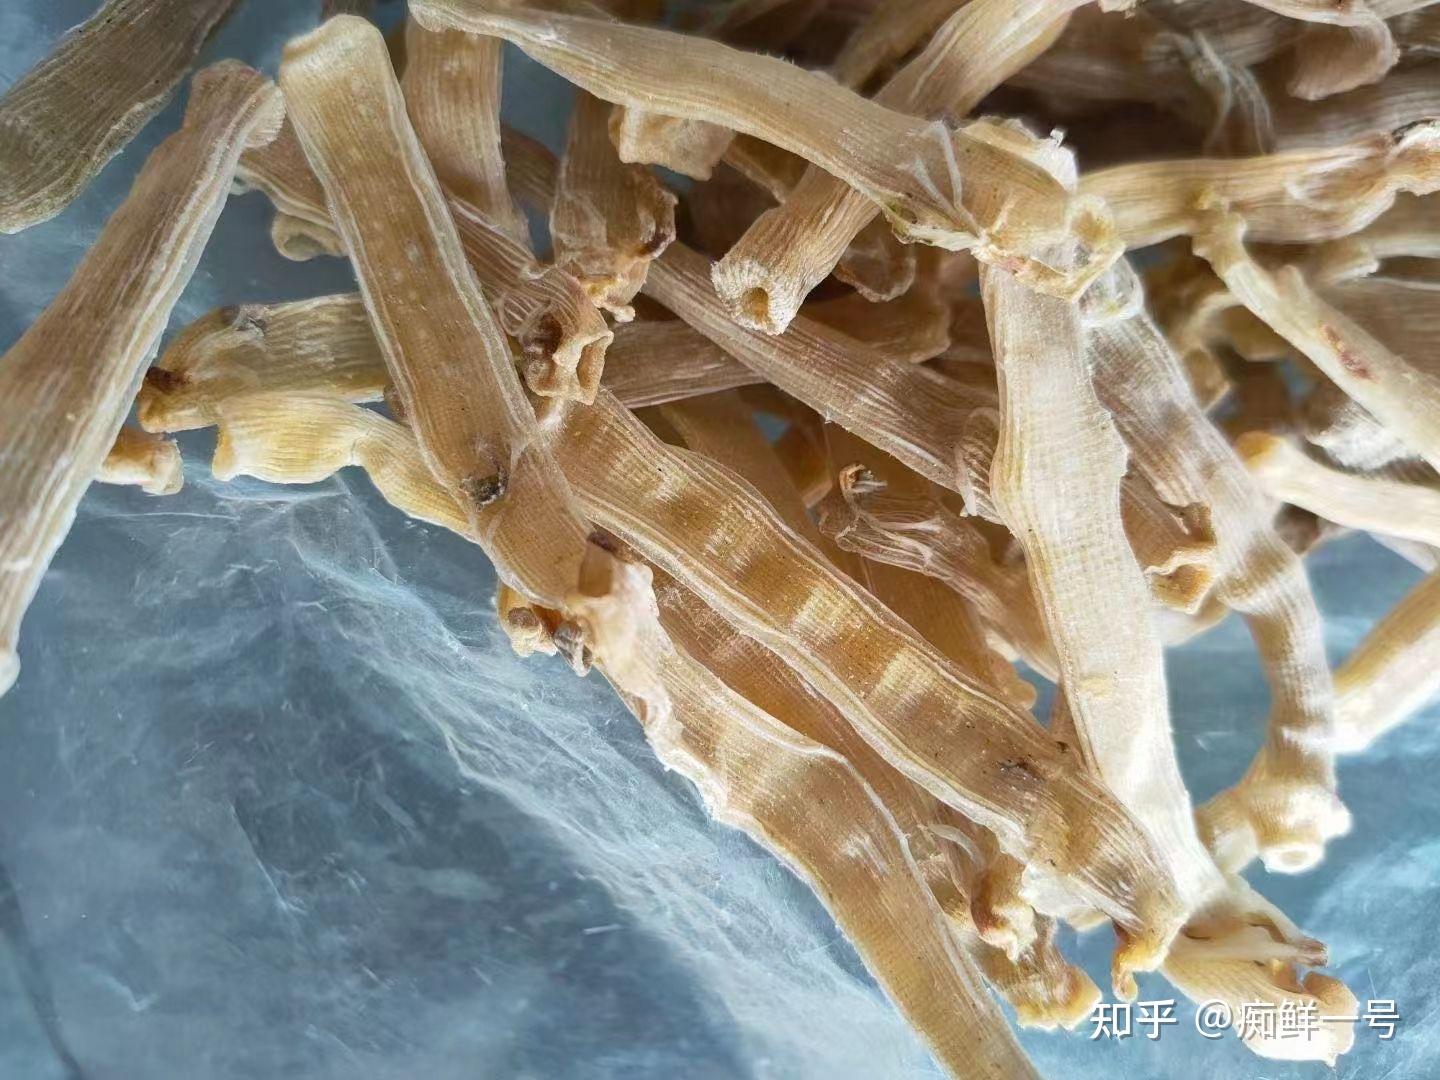 厂家 一德路海味 大号沙虫干500g 批发去沙袋沙虫海味干货全国发-阿里巴巴